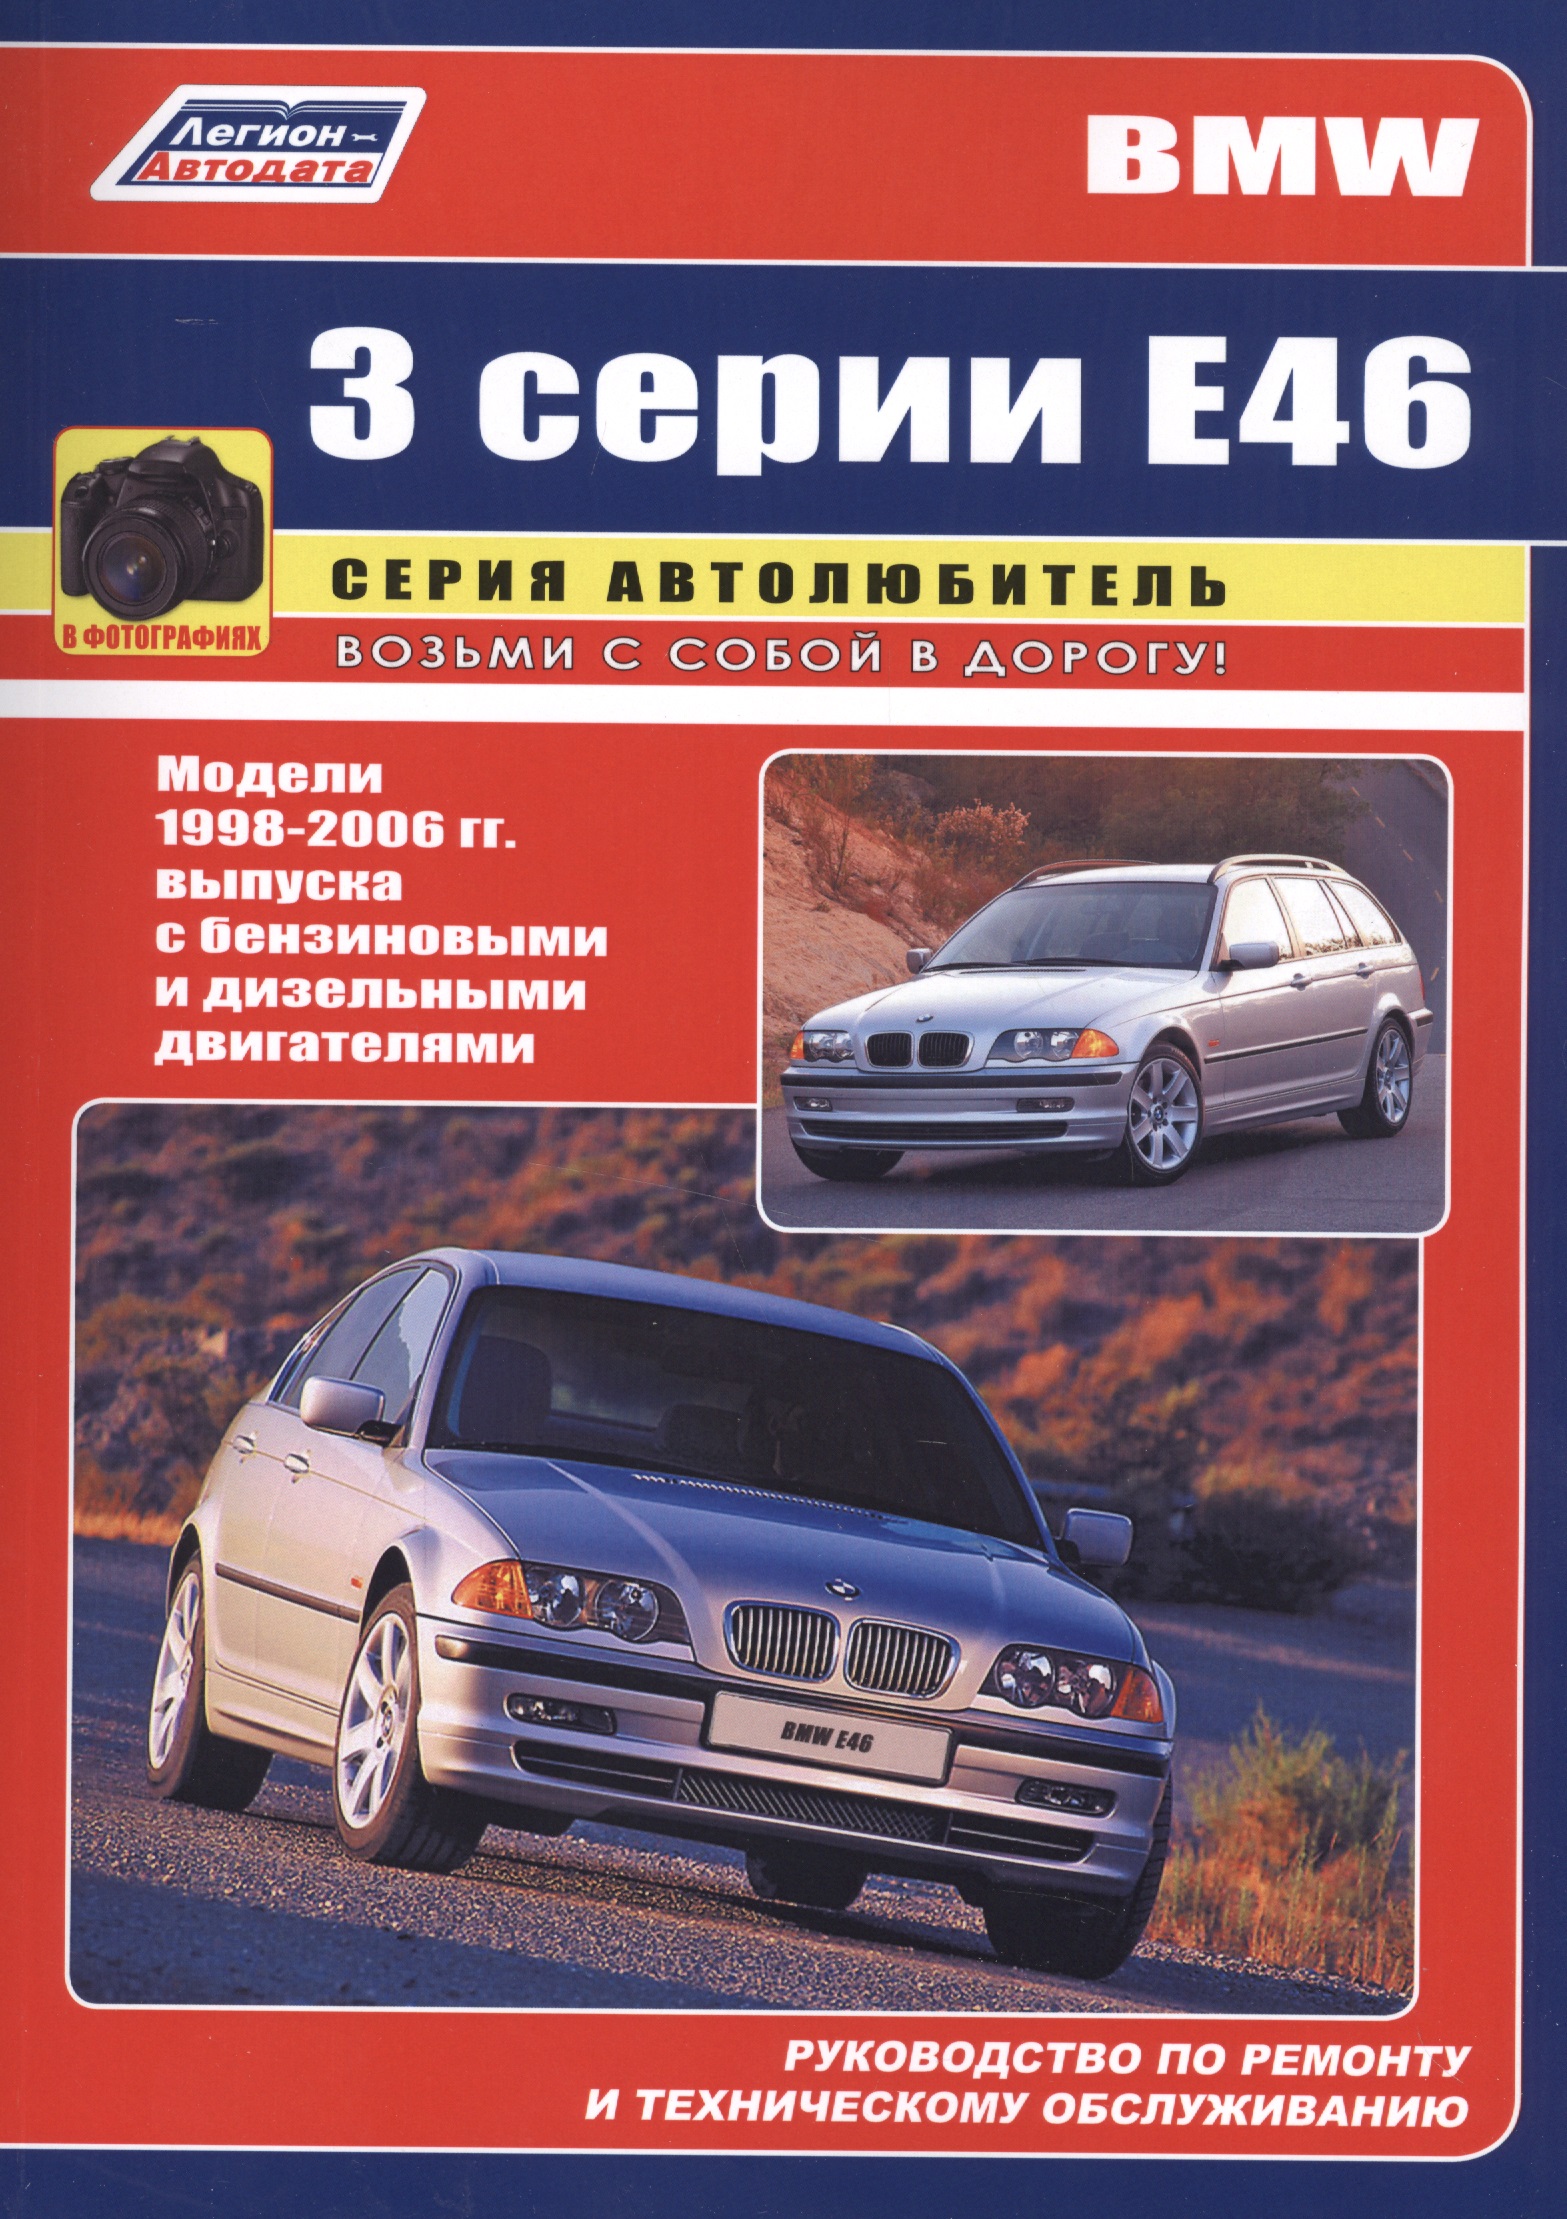 BMW 3 серии Е46 в фотографиях. Модели 1998-2006 гг. выпуска с бензиновыми и дизельными двигателями. Руководство по ремонту и техническому обслуживанию